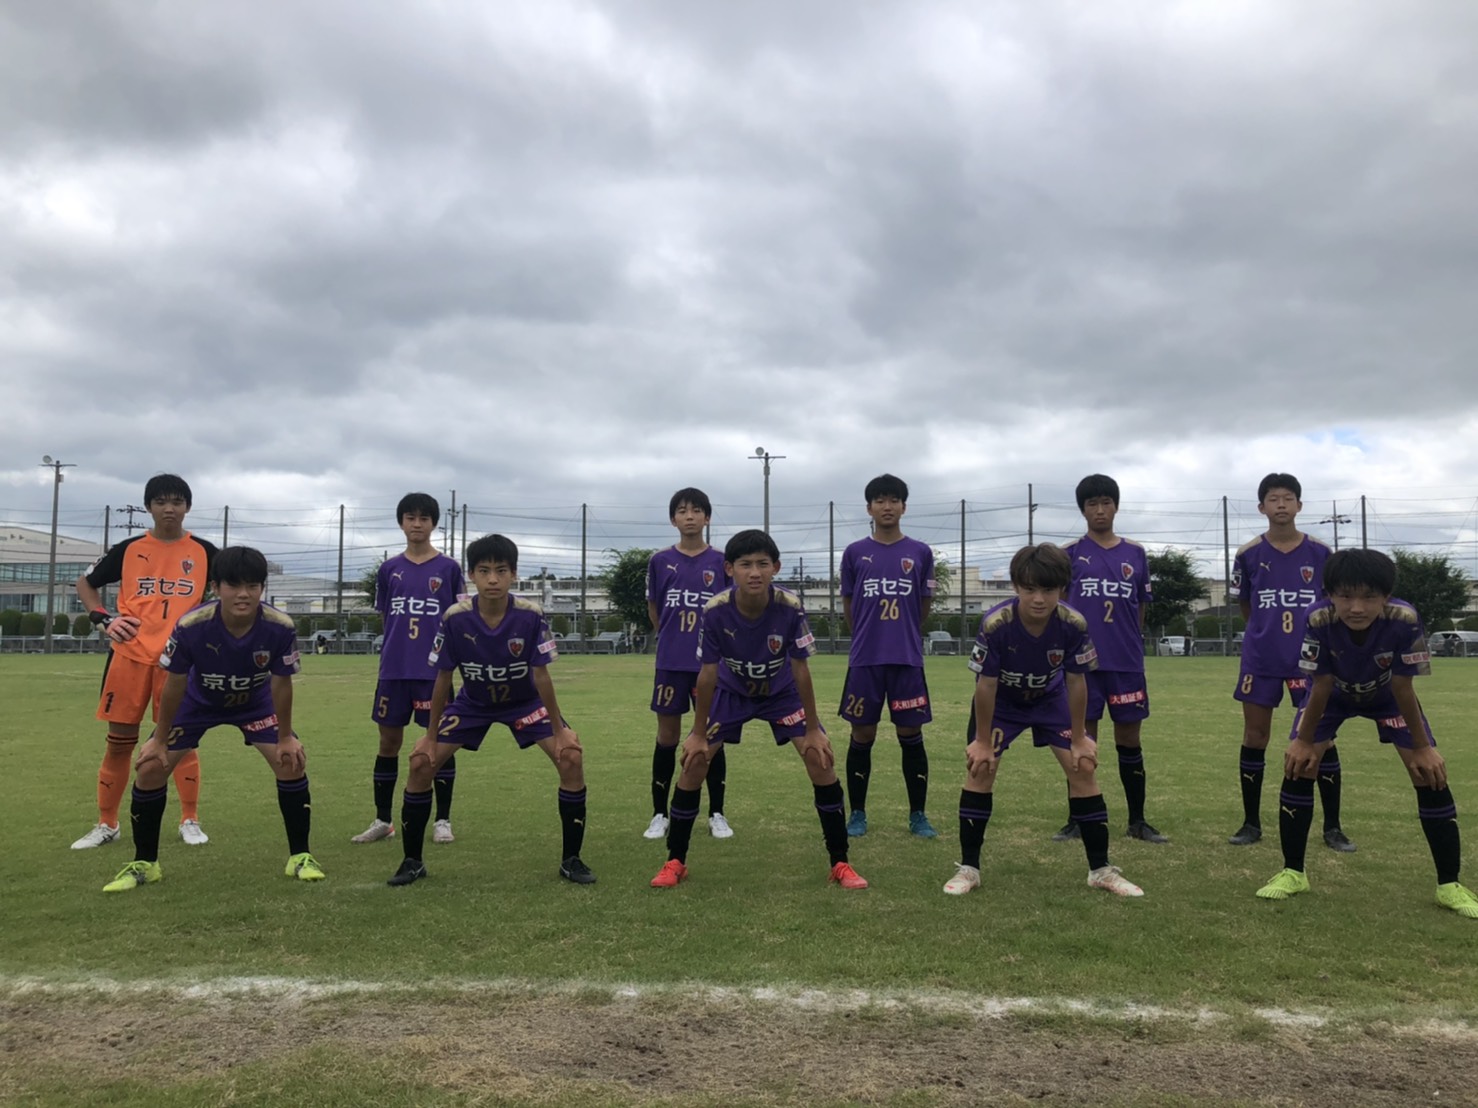 【U-15】高円宮杯JFA U-15サッカーリーグ滋賀2021 2部リーグ第14節